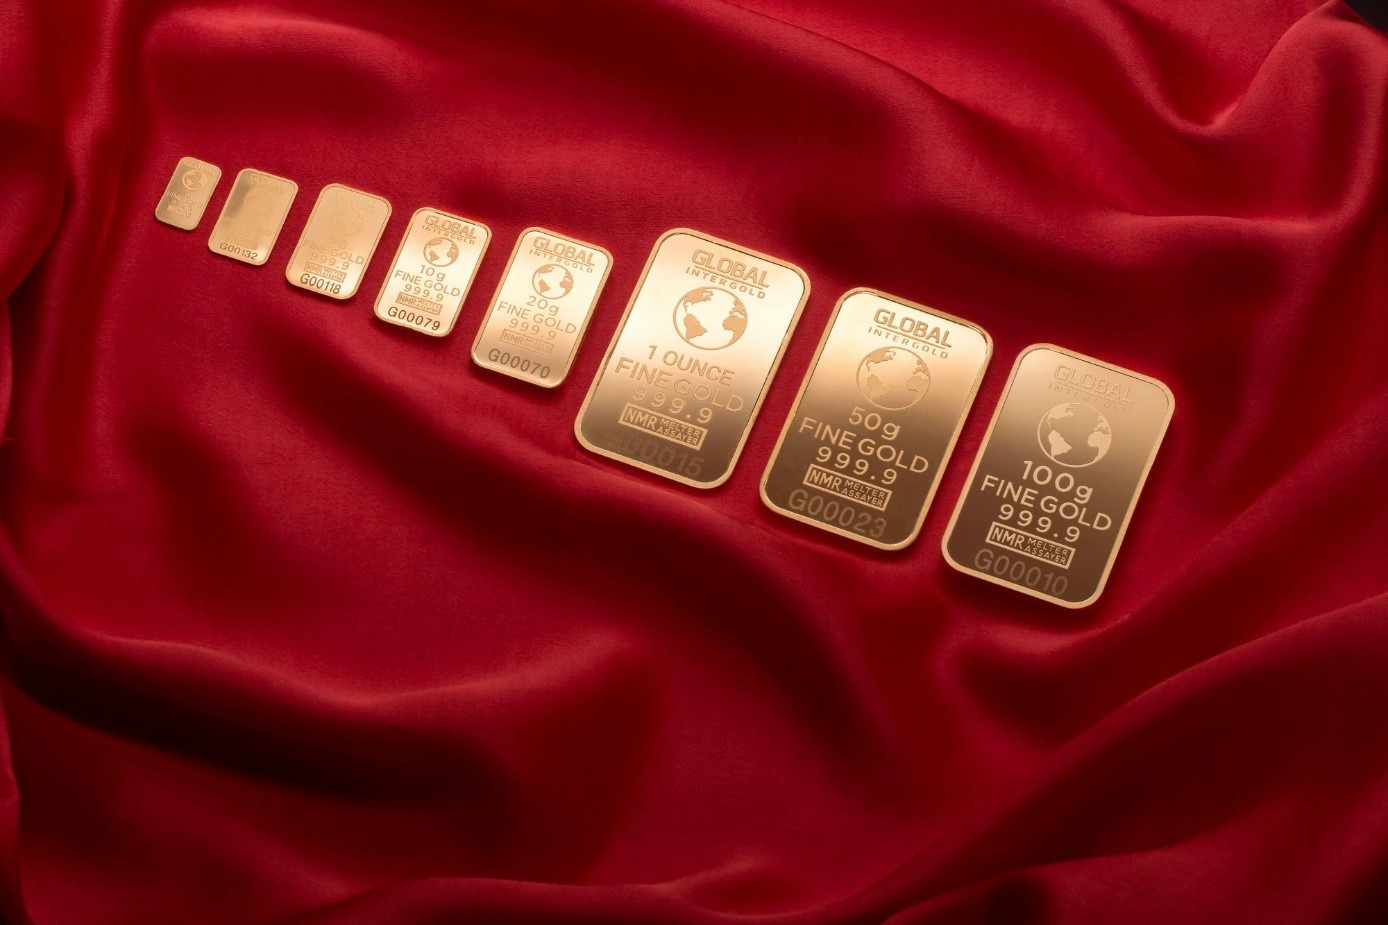 Guld har under lång tid betraktats som en vara i fristad som investerare och regeringar använder för att skydda sin förmögenhet. Medan metallen gav en liten vinst 2022 för investerare i USA, gjorde visar guldprisets utveckling betydande vinster mot andra valutor.